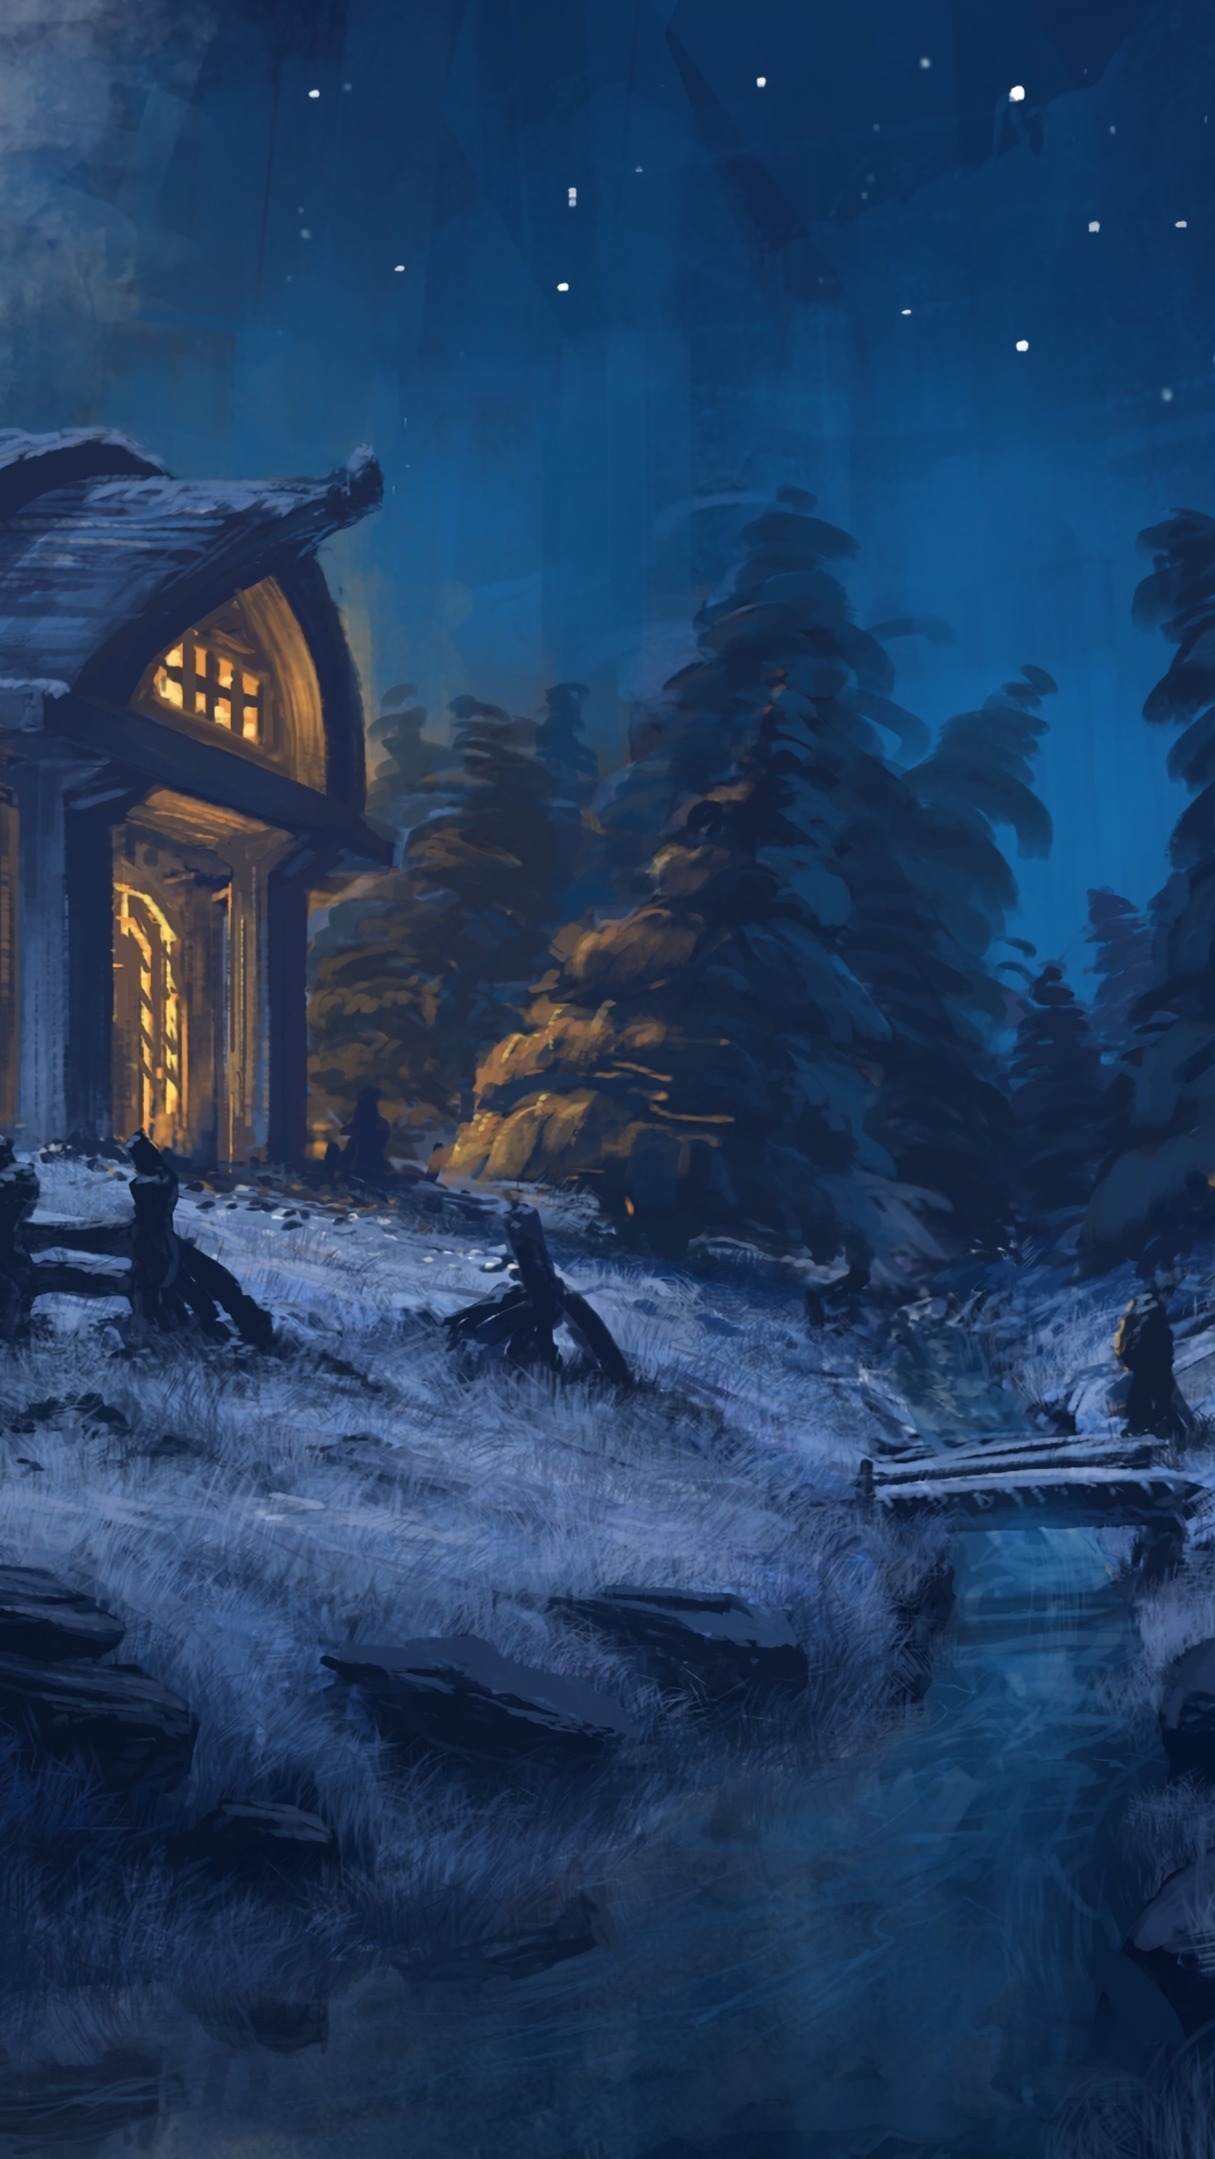 Winter night fantasy art wallpaper - backiee